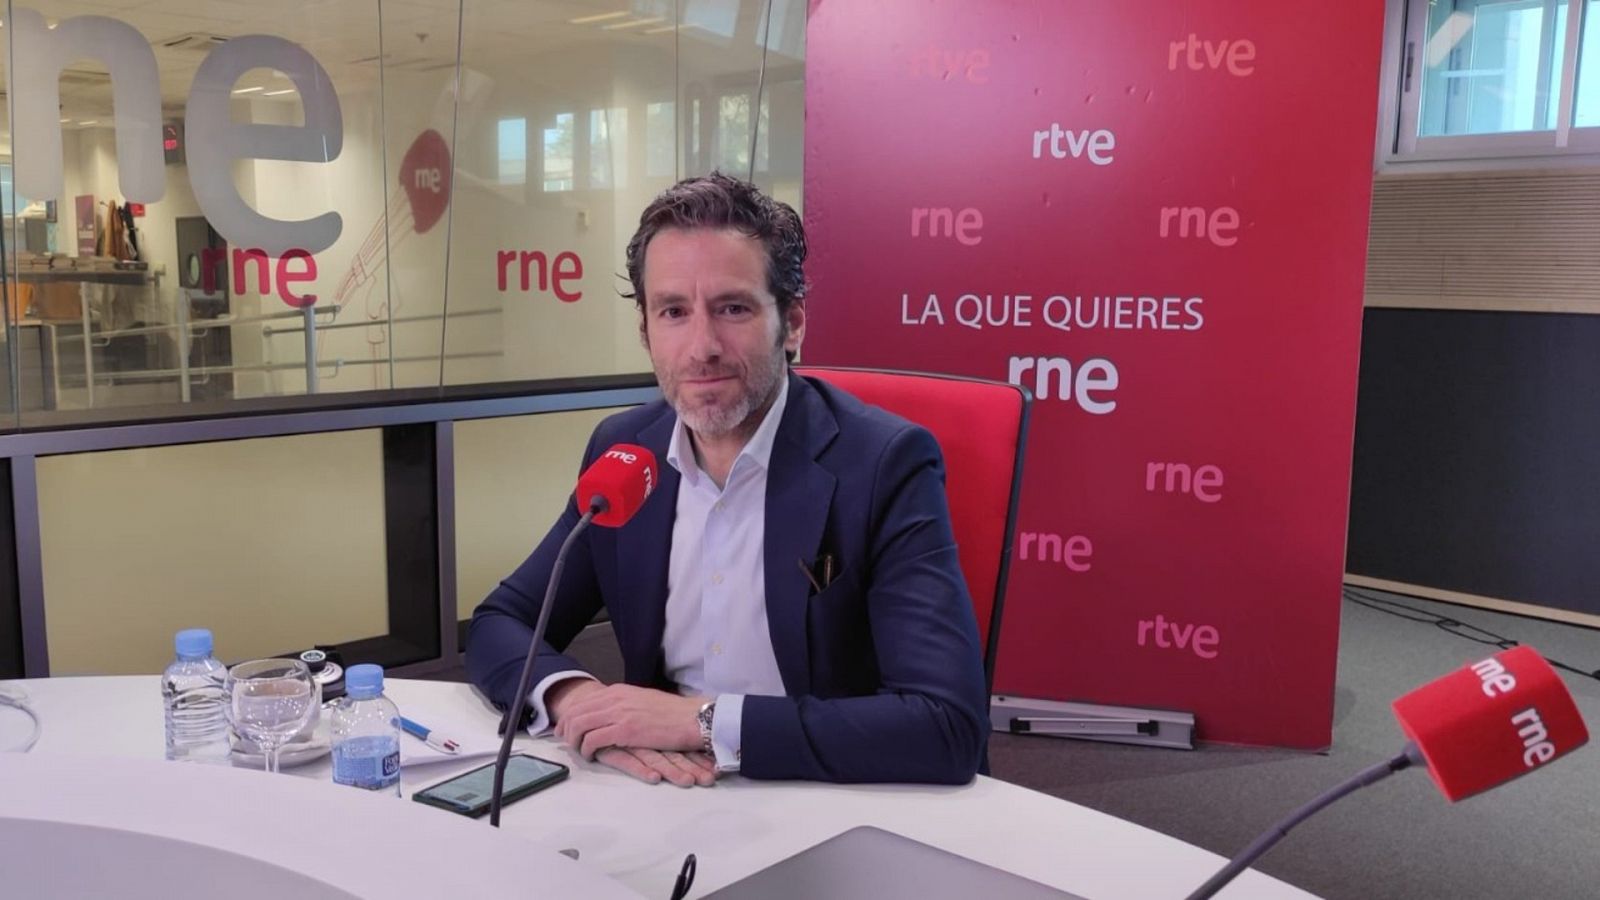 Las Mañanas de RNE -  Borja Sémper, portavoz de campaña del PP: "No es una victoria amarga, es insuficiente" - Escuchar ahora